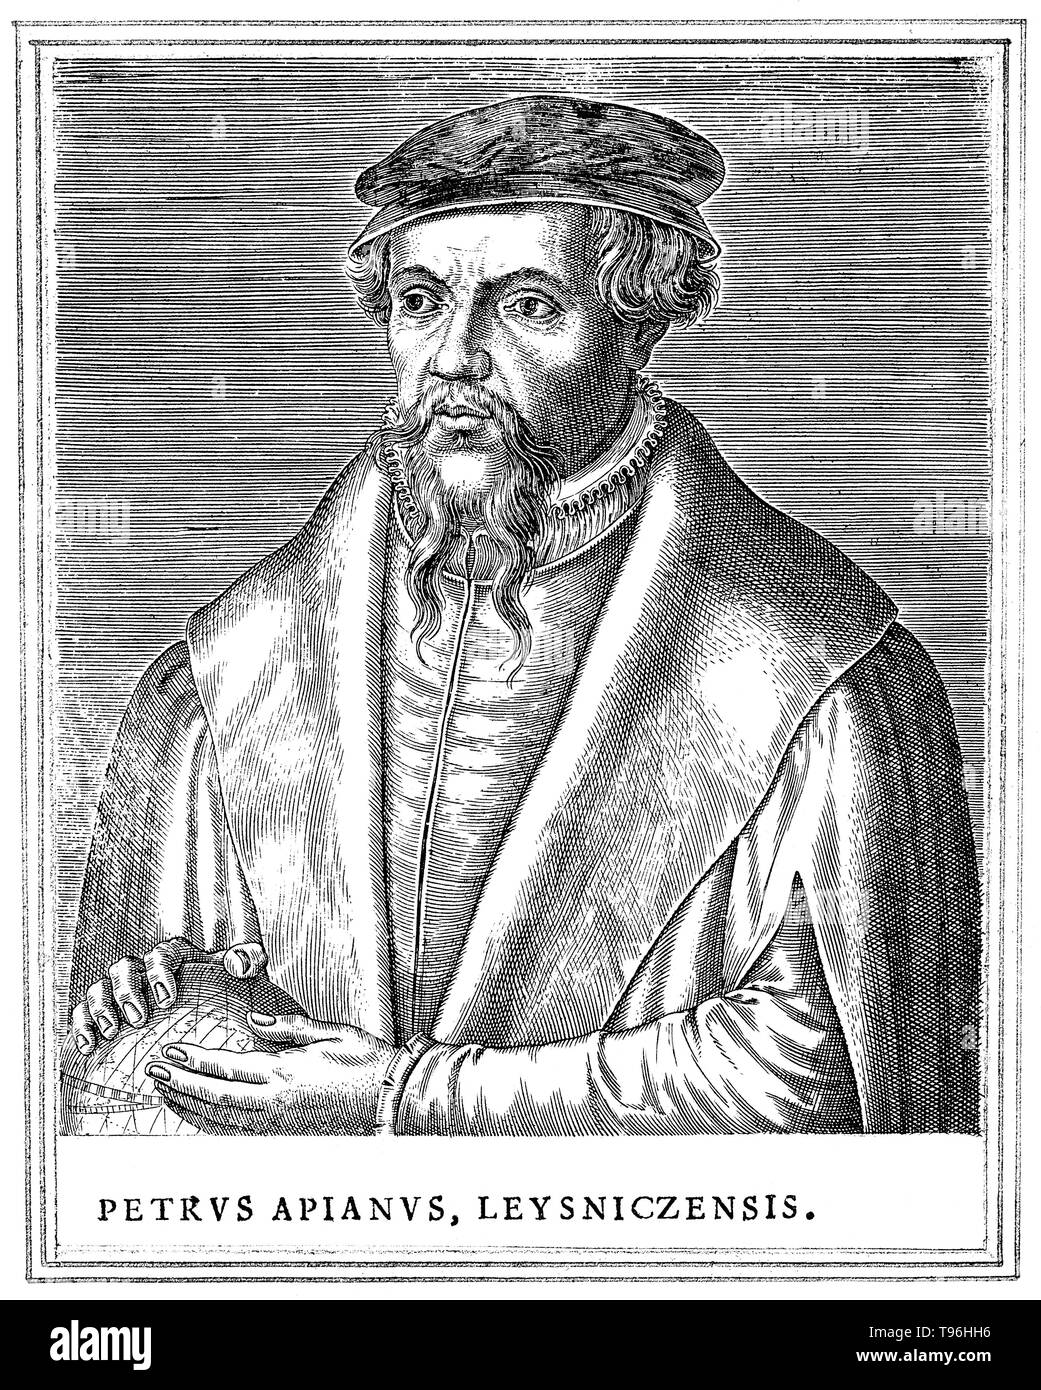 Petrus Apianus (April 16, 1495 - April 21, 1552) war ein deutscher Humanist, der für seine Werke in der Mathematik, Astronomie und Kartographie bekannt. 1524 er seinen Cosmographicus liber produziert, eine angesehene Arbeit über Astronomie und Navigation das war zu sehen mindestens 30 Nachdrucke in 14 Sprachen. Im Jahre 1527 veröffentlichte er eine Variation des Pascal'schen Dreieck, und im Jahre 1534 eine Tabelle von Sines. Im Jahre 1531 beobachtete er ein Komet und entdeckte, dass Schwanz eines Kometen immer wieder von der Sonne entfernt. Stockfoto